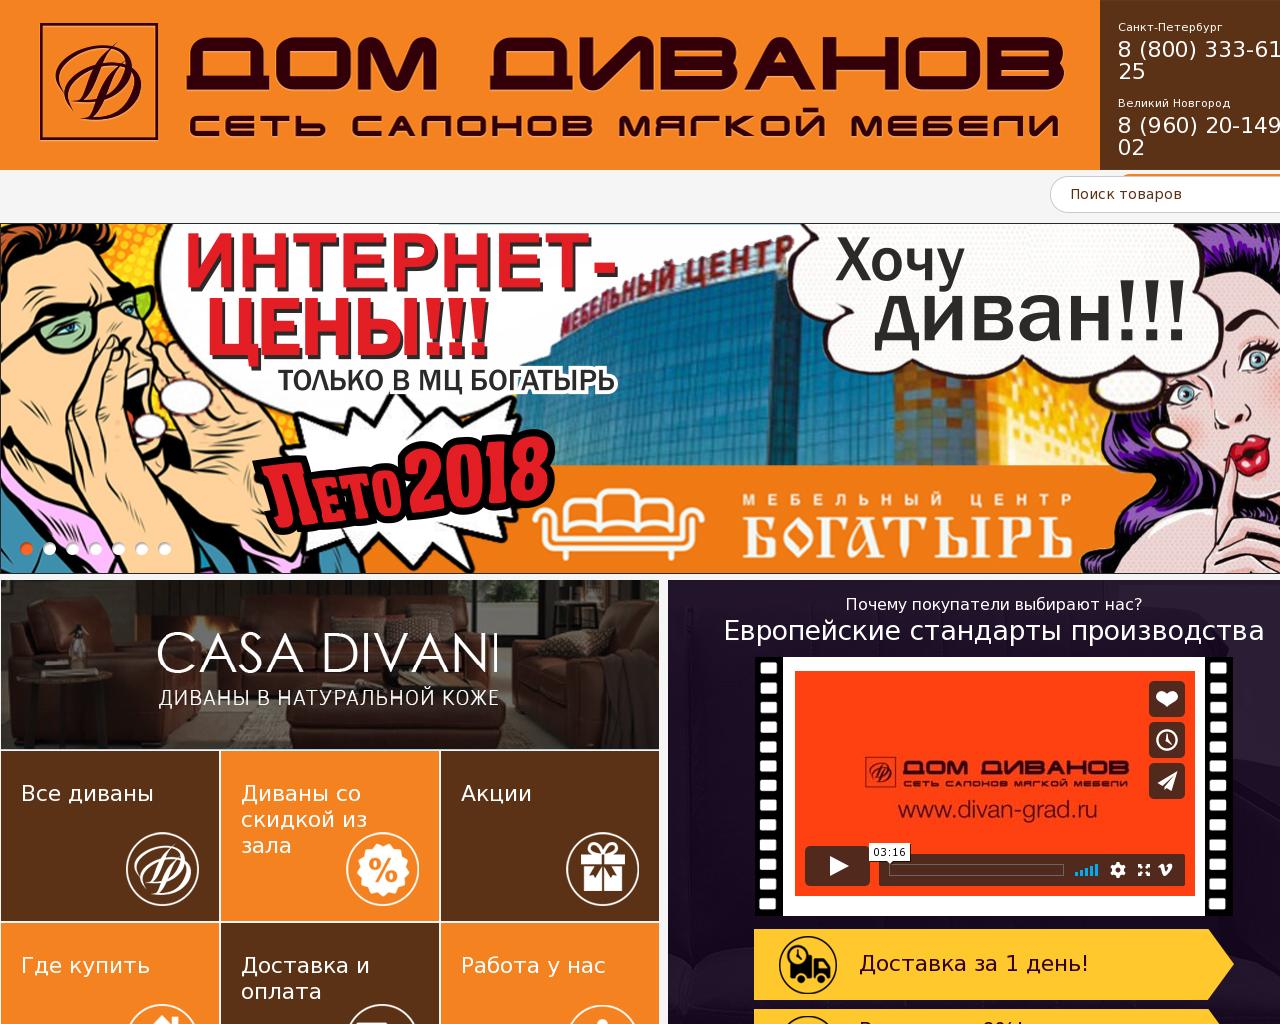 Изображение сайта divan-grad.ru в разрешении 1280x1024